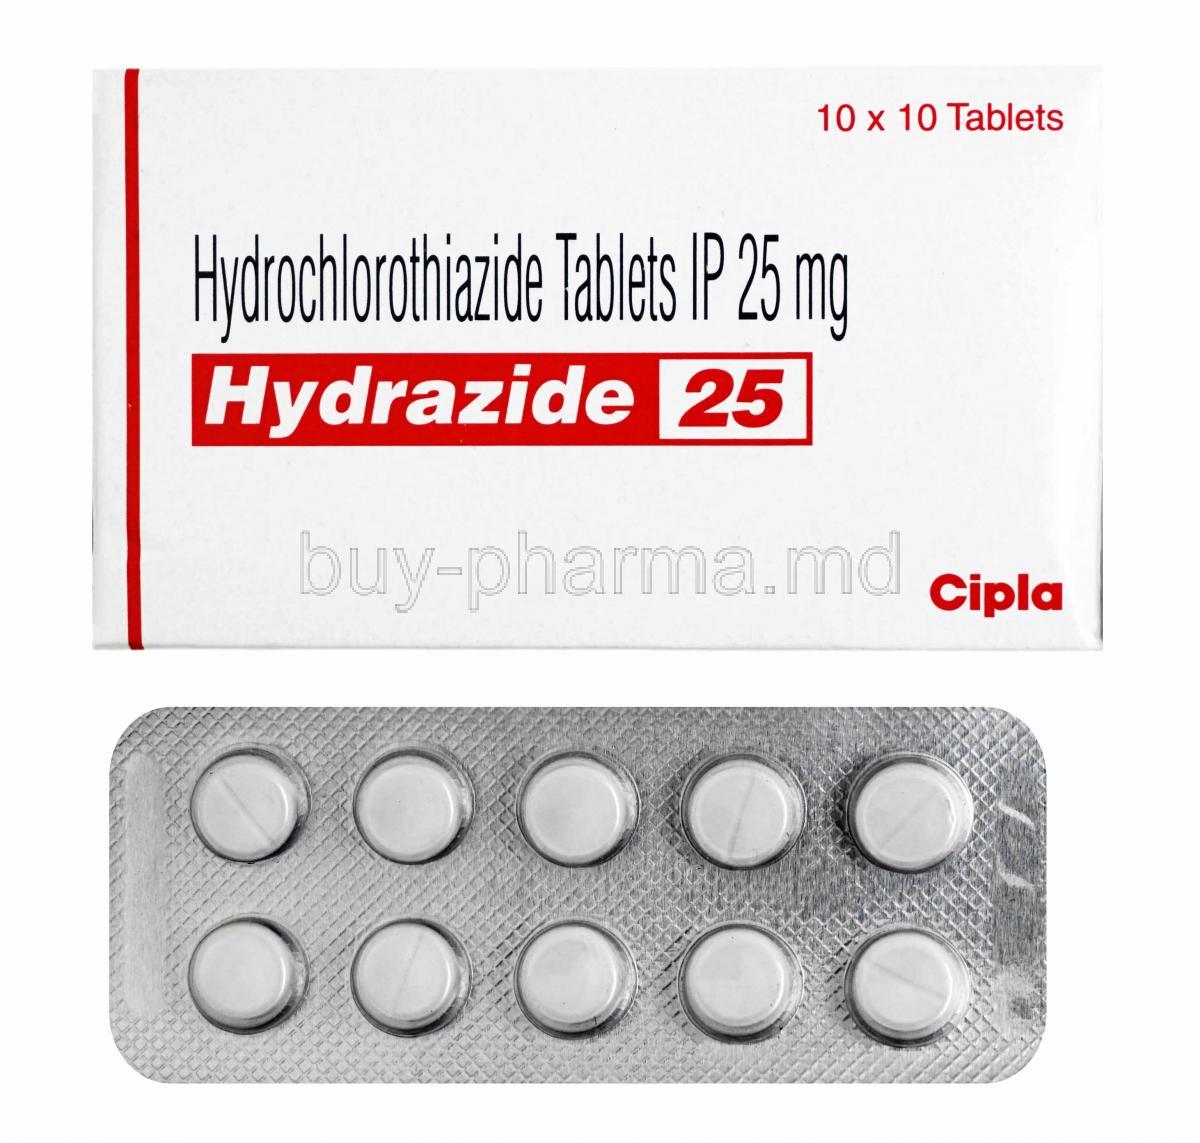 Hydrazide, Hydrochlorothiazide 12.5mg box and tablets